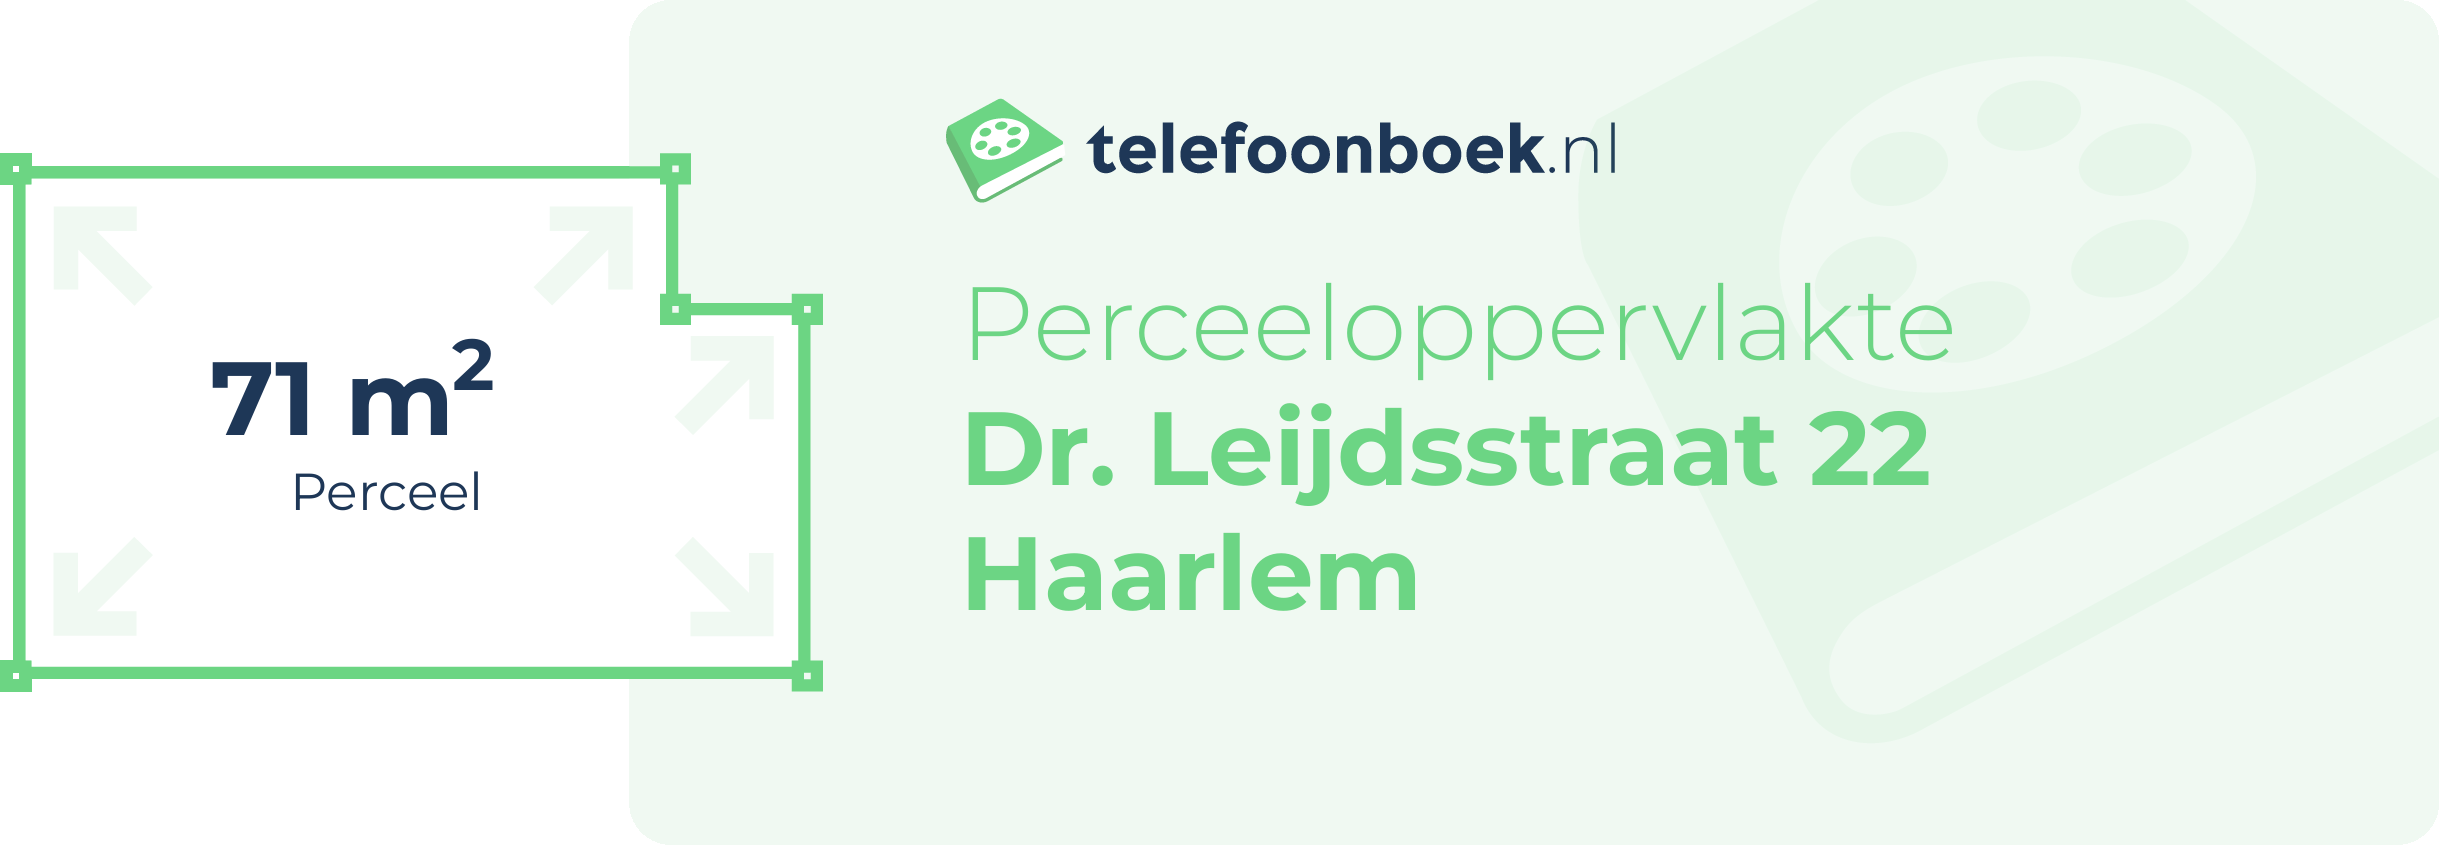 Perceeloppervlakte Dr. Leijdsstraat 22 Haarlem